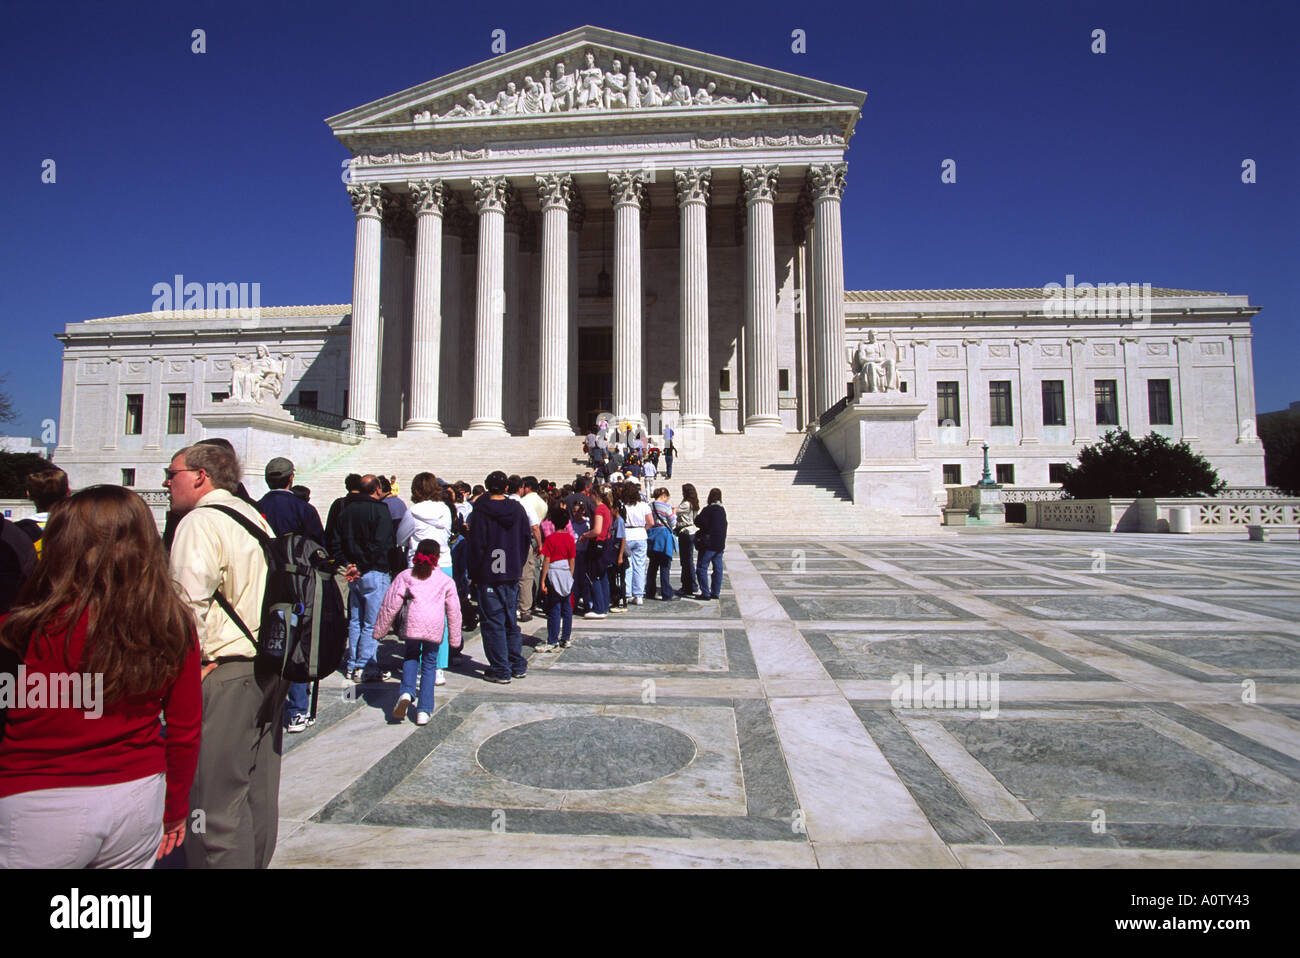 Les touristes s'alignent sur la Plaza en face du bâtiment de la Cour suprême des Etats-Unis Washington DC Banque D'Images